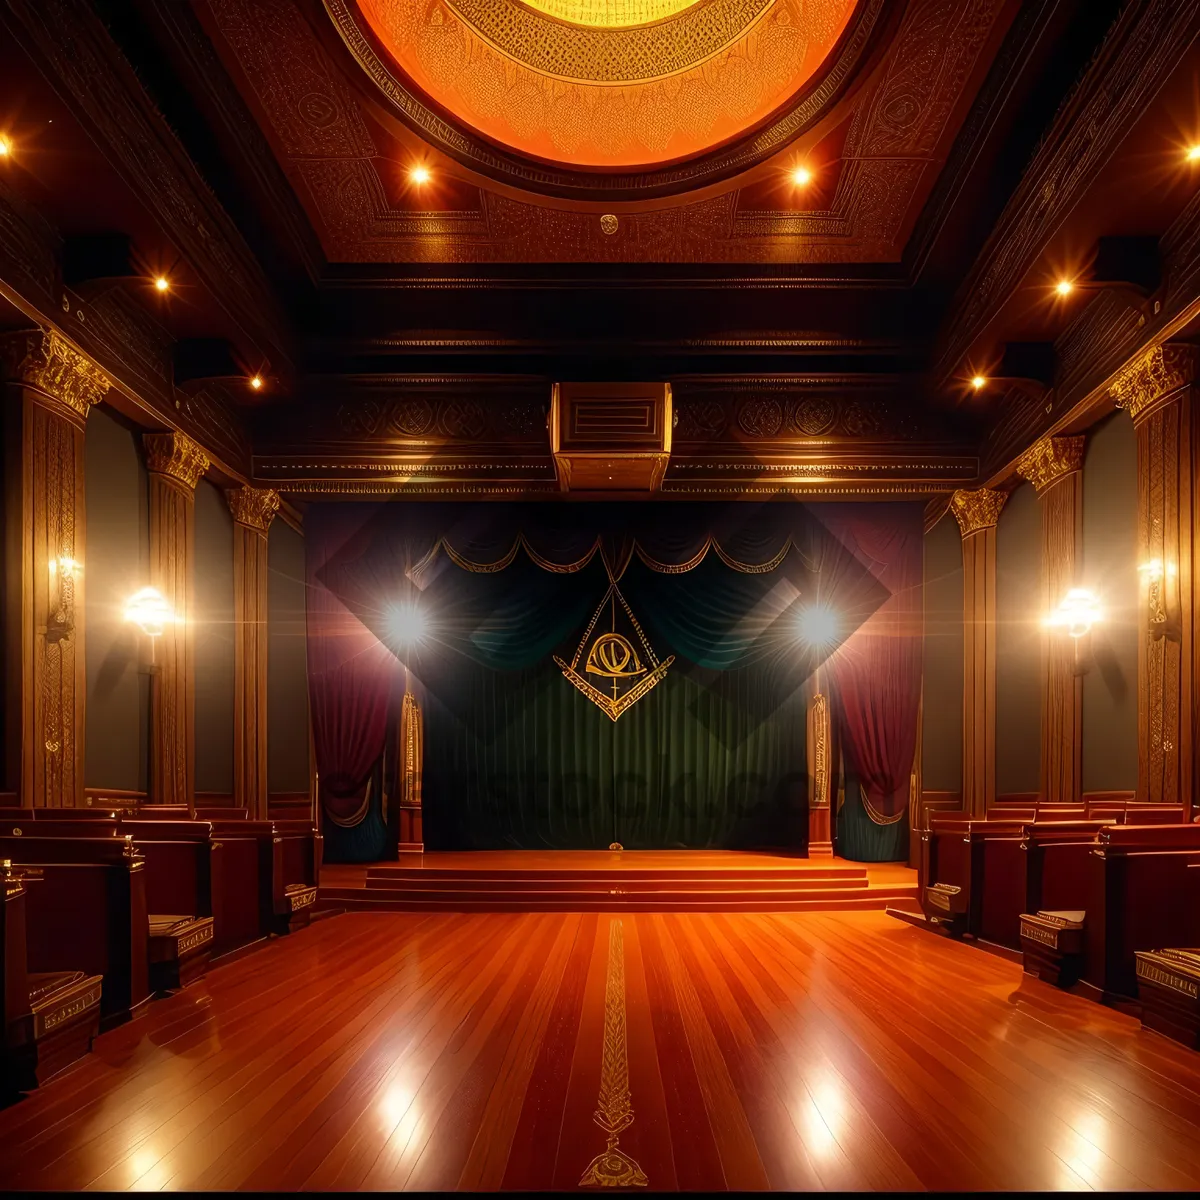 Picture of Theater Curtain Showcase of Elegant Interior Design